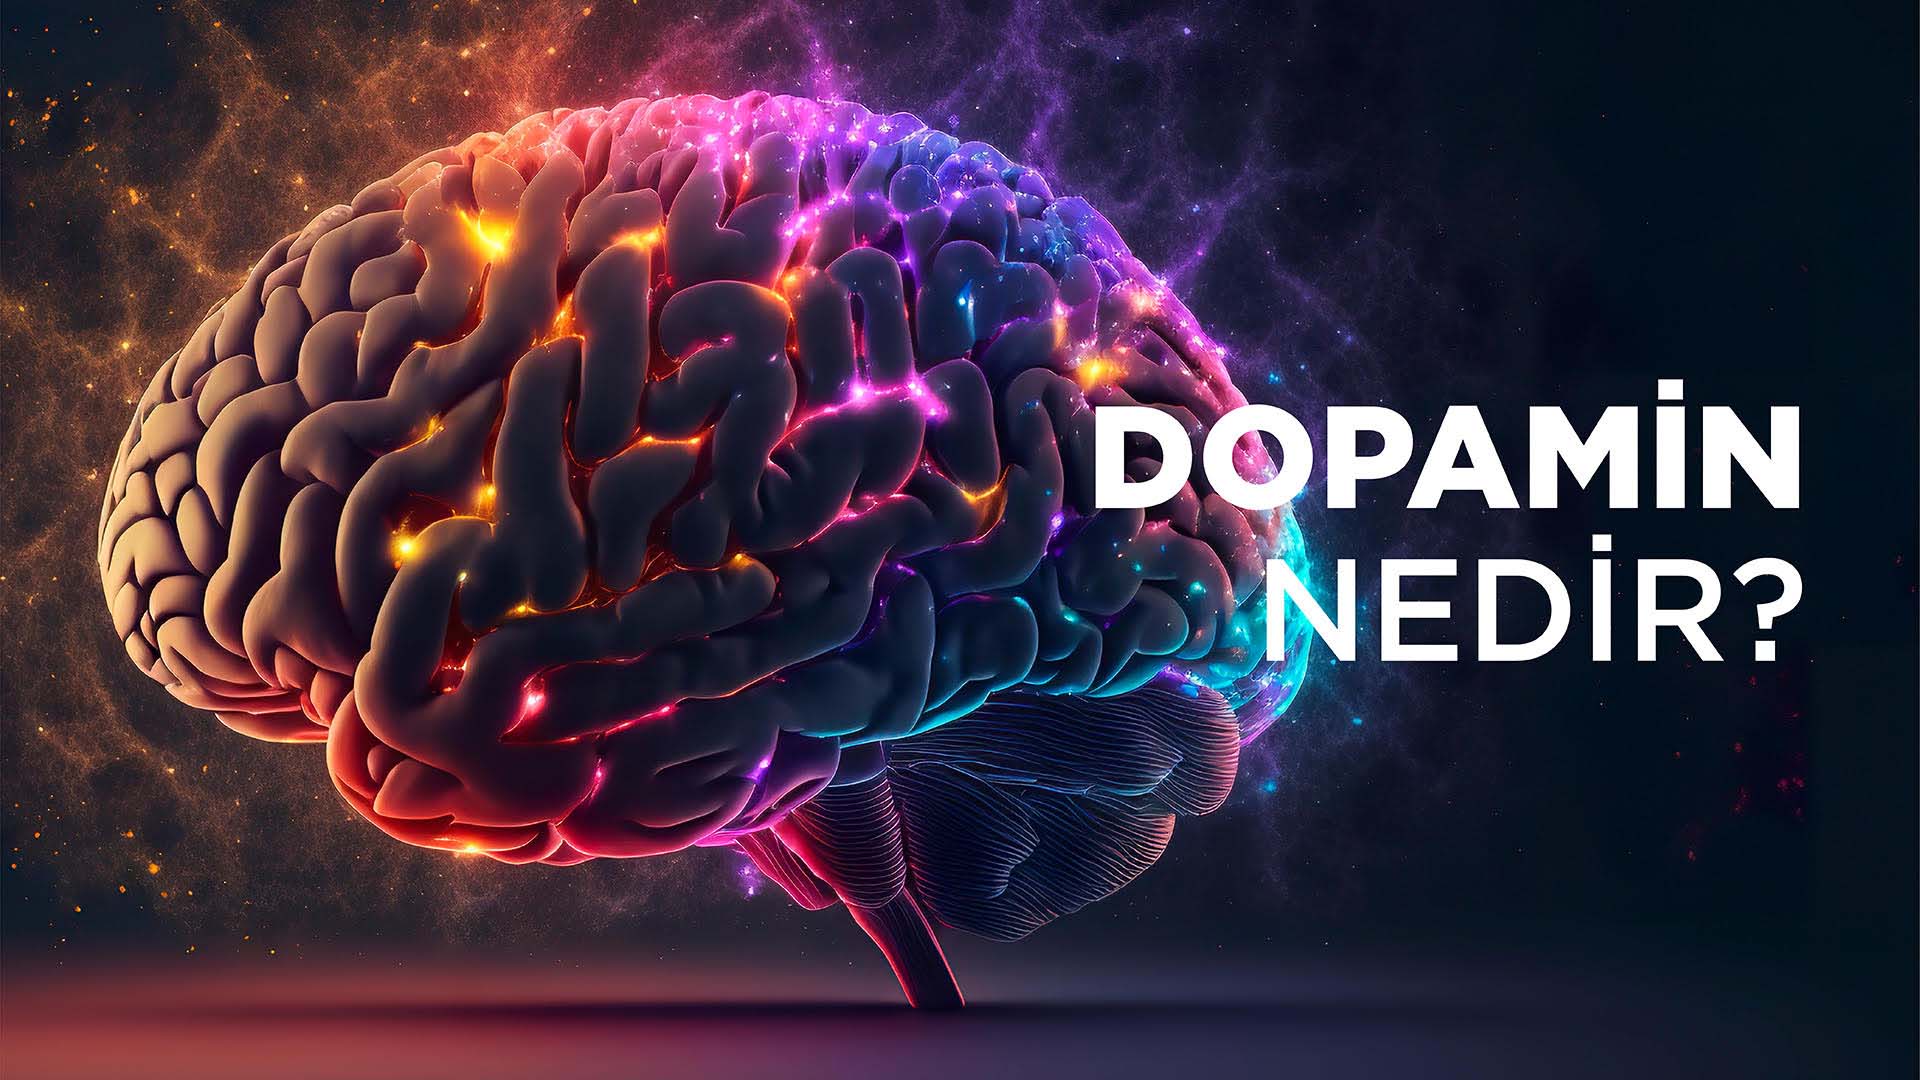  Dopamin Nedir? Dopamin Ne İşe Yarar? | Dopamin Hakkında Bilgi-Vitafenix